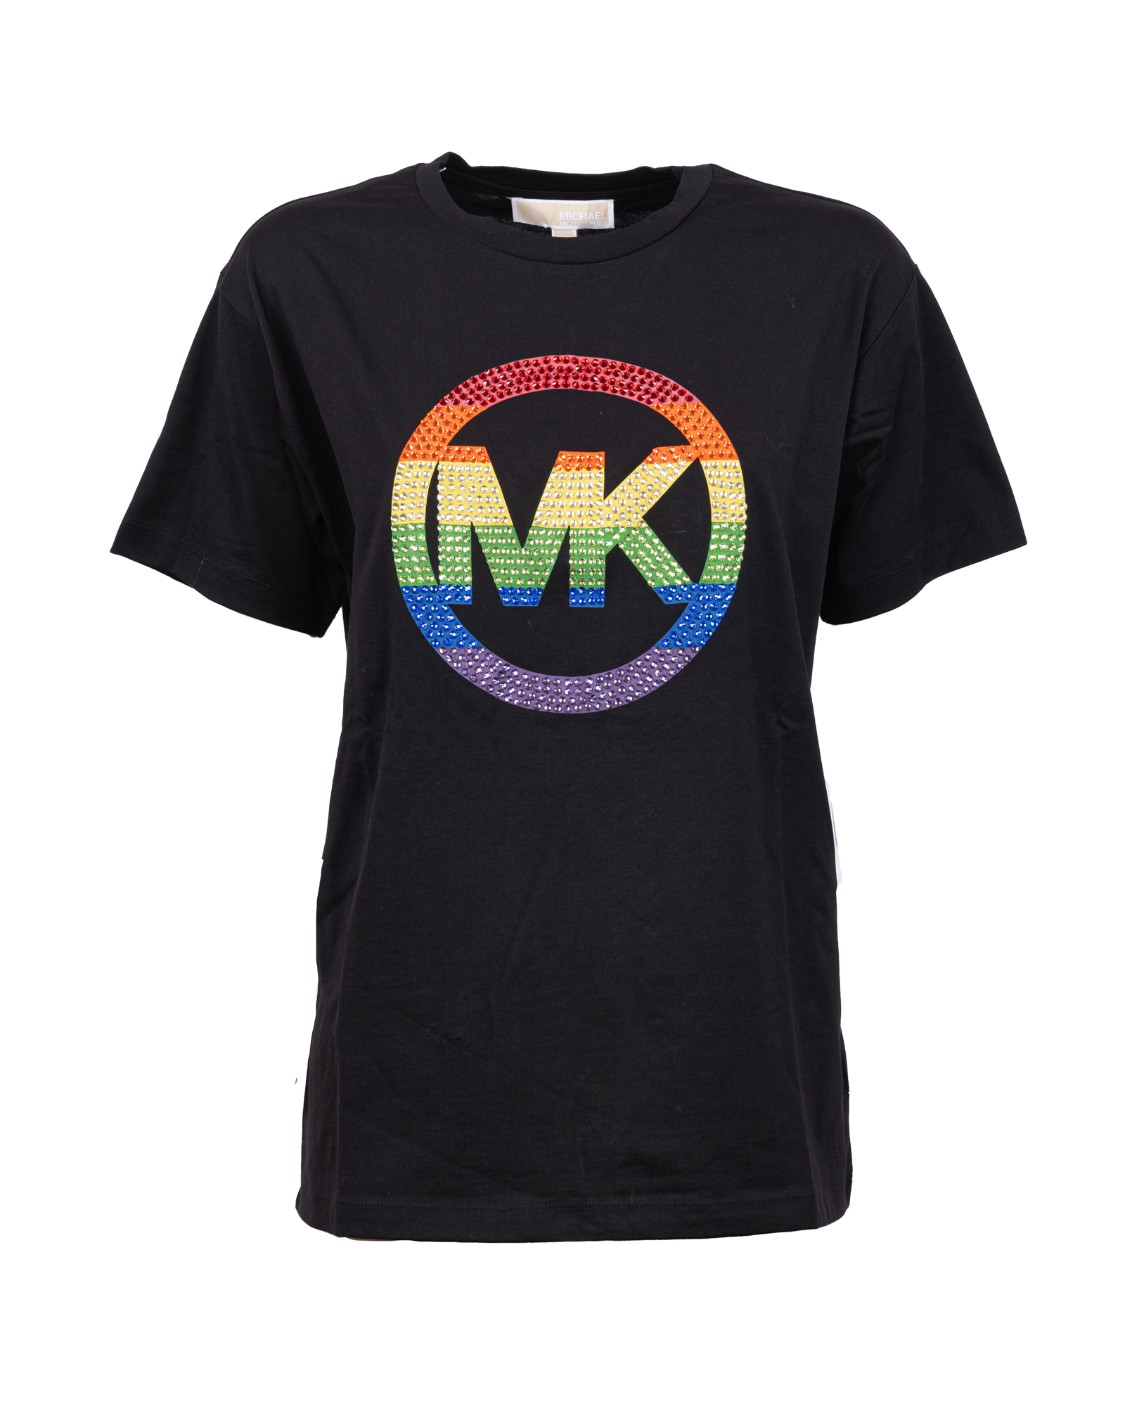 shop MICHAEL KORS  T-shirt: Michael Kors t-shirt con Logo.
Girocollo.
Maniche corte.
Logo MK multicolore.
Vestibilità regolare.
Composizione: 100% Cotone organico.
Fabbricato in Cina.. MU250T397J-001 number 2733872